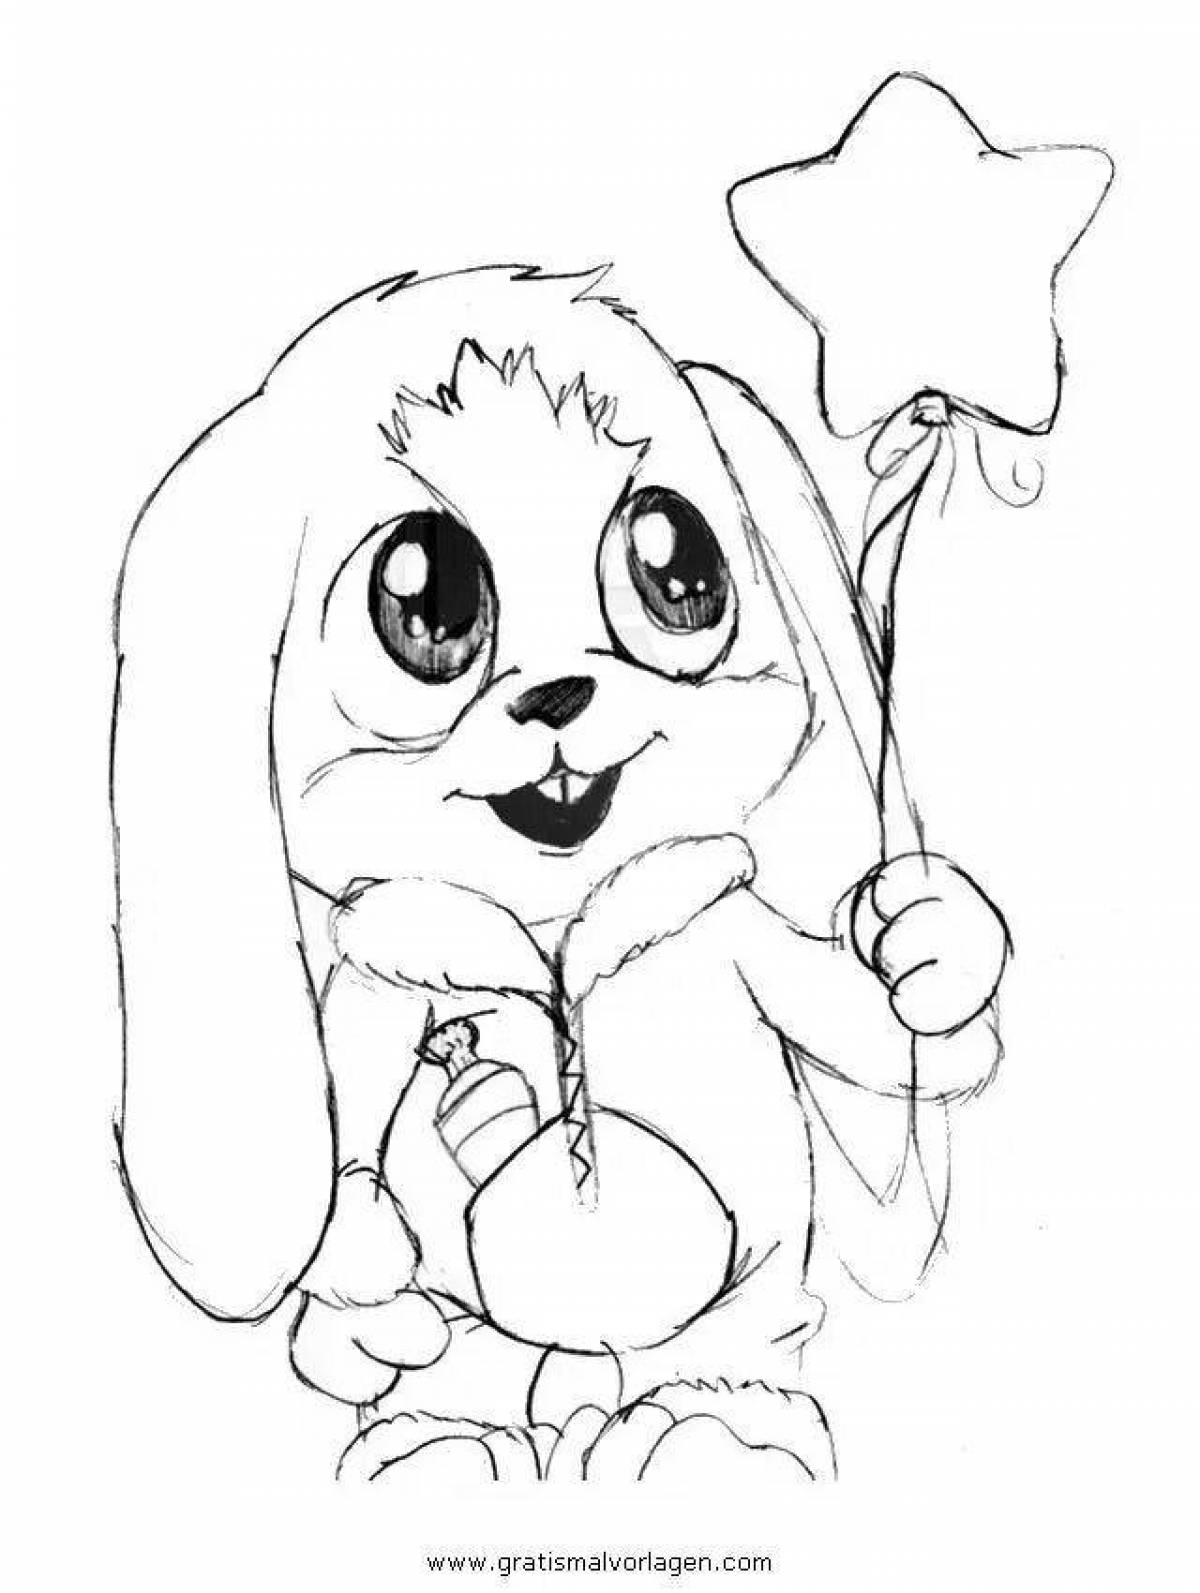 Радиантная раскраска кролик с сердечком